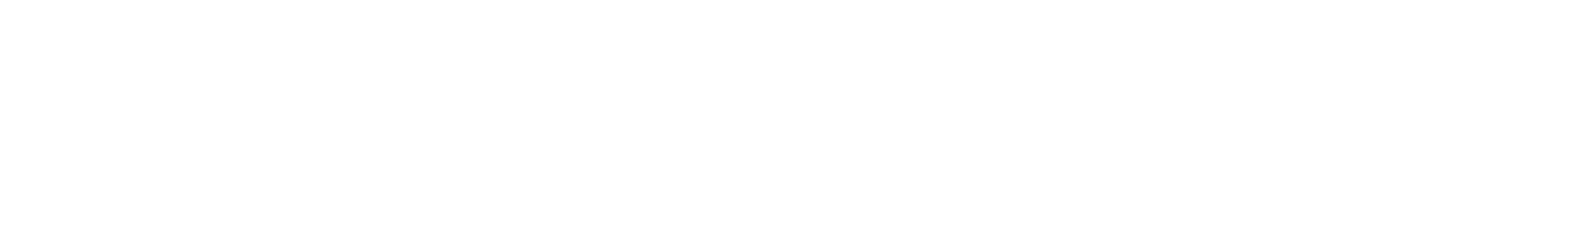 Ouster logo grand pour les fonds sombres (PNG transparent)